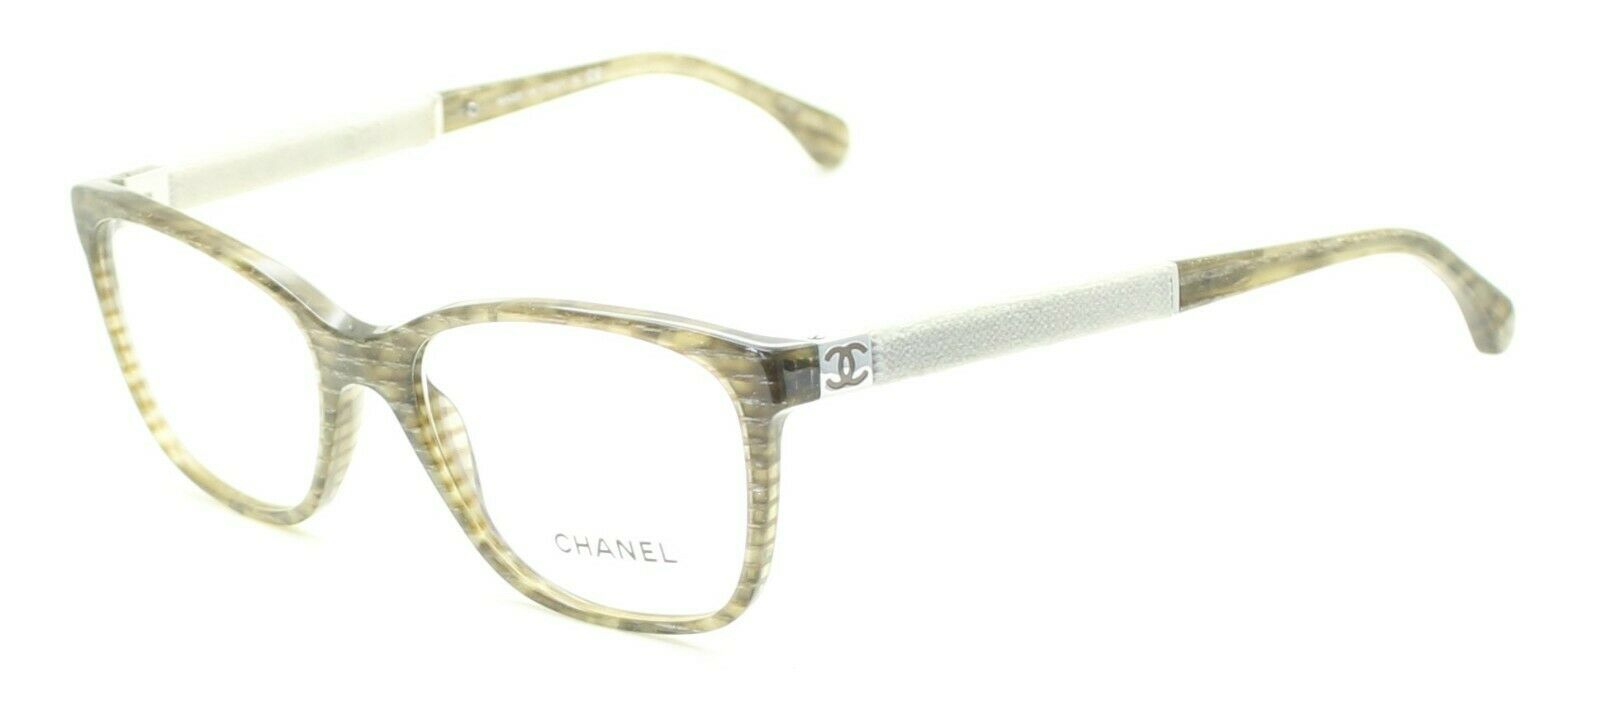 chanel oversized sunglasses for women